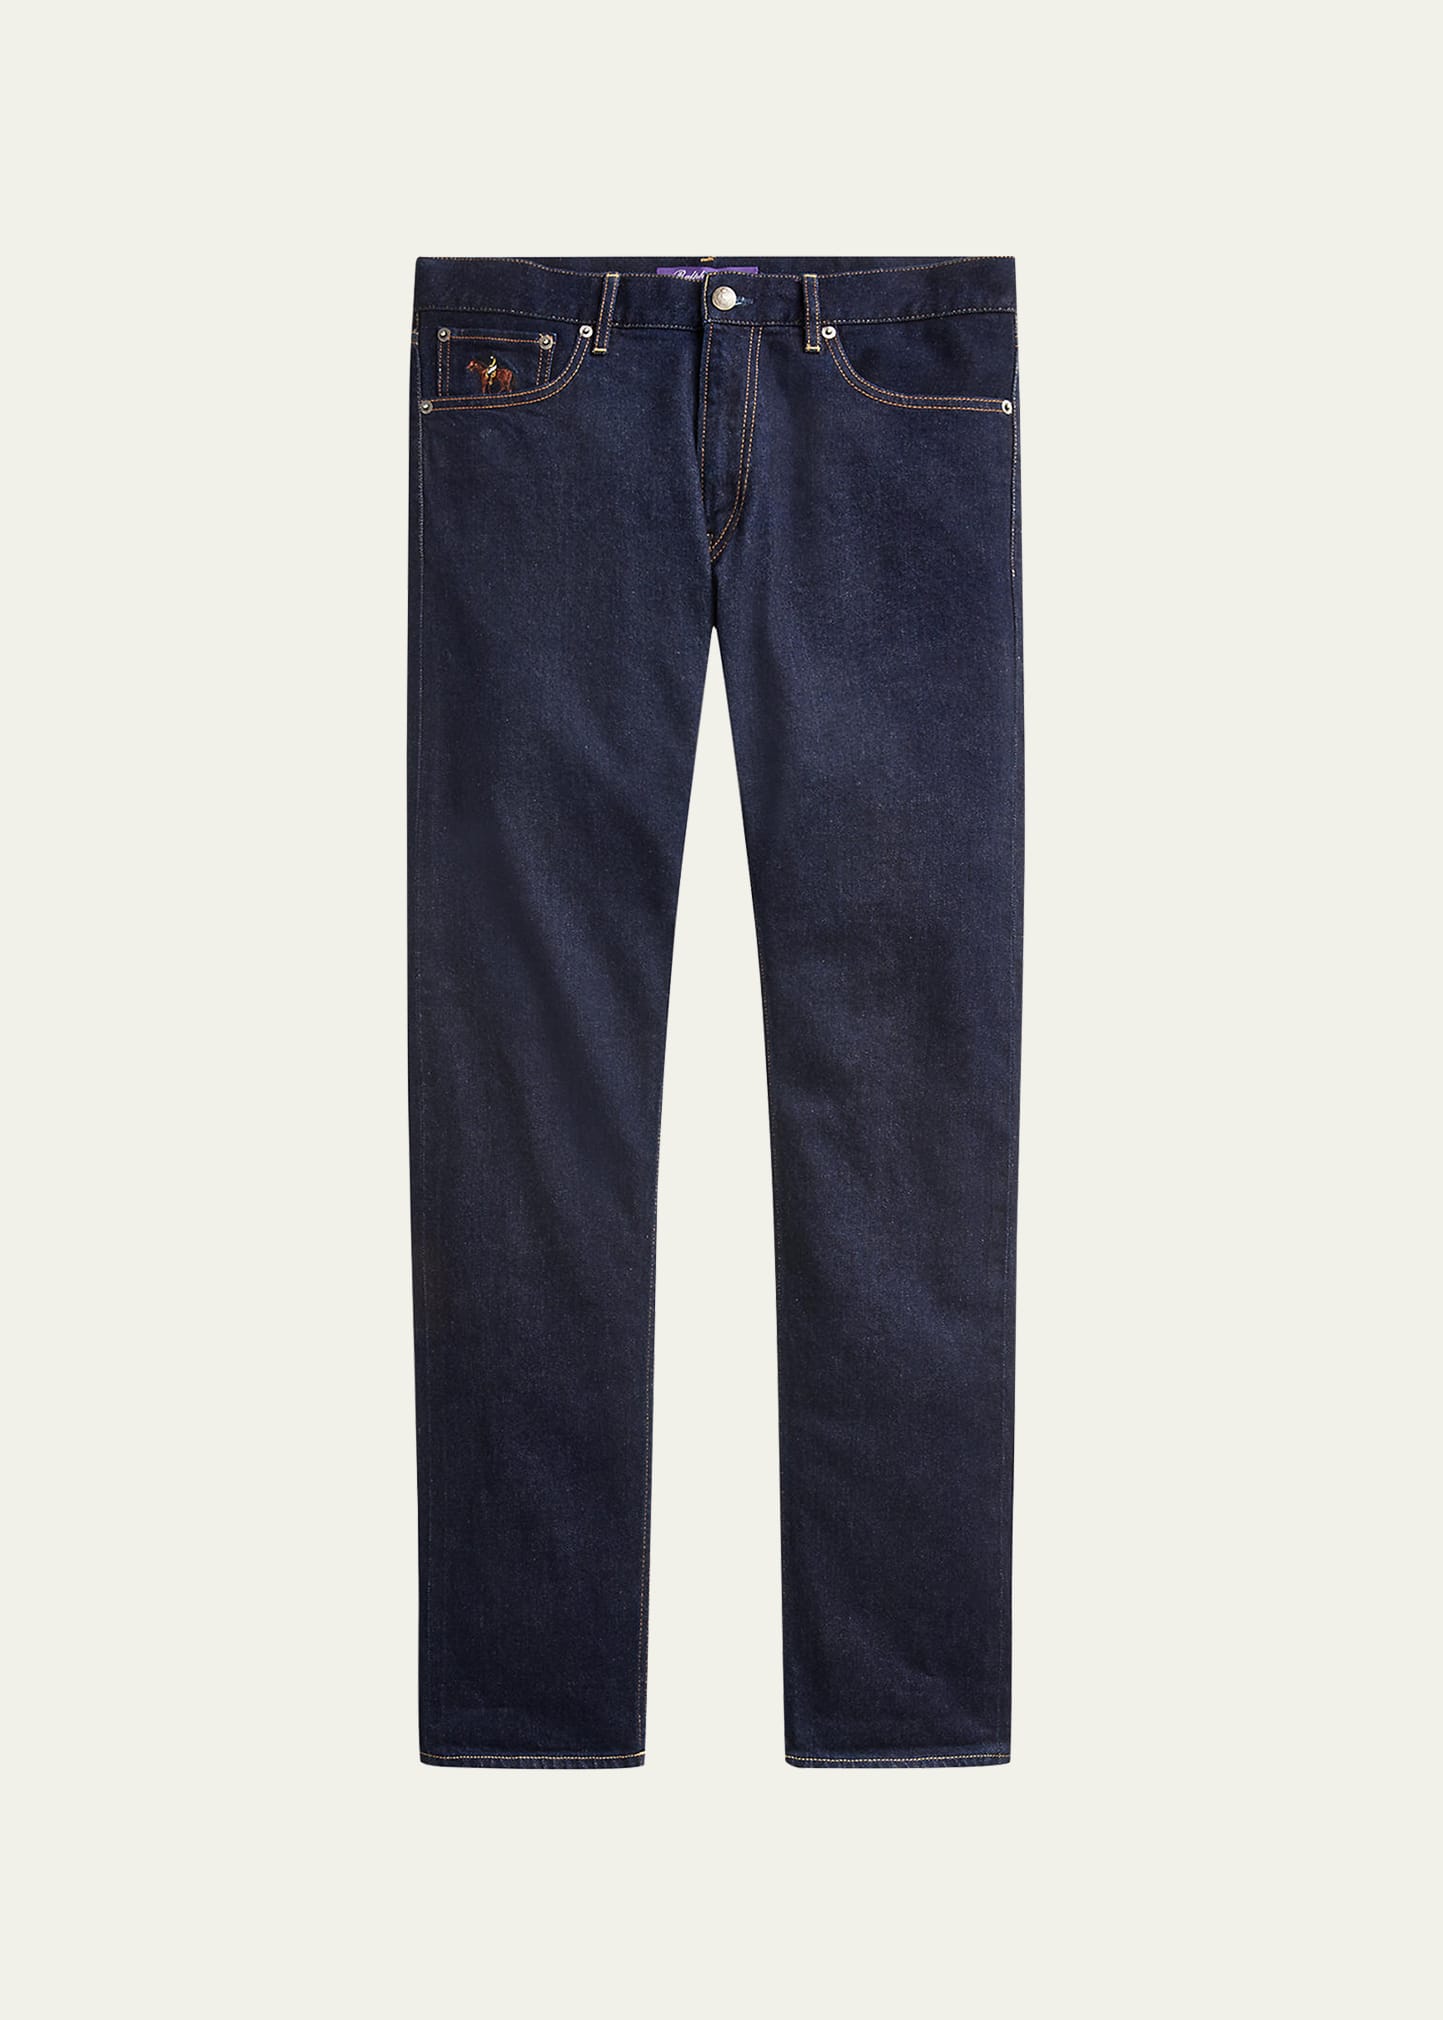 Men's Slim-Fit Stretch Denim 5-Pocket Jeans